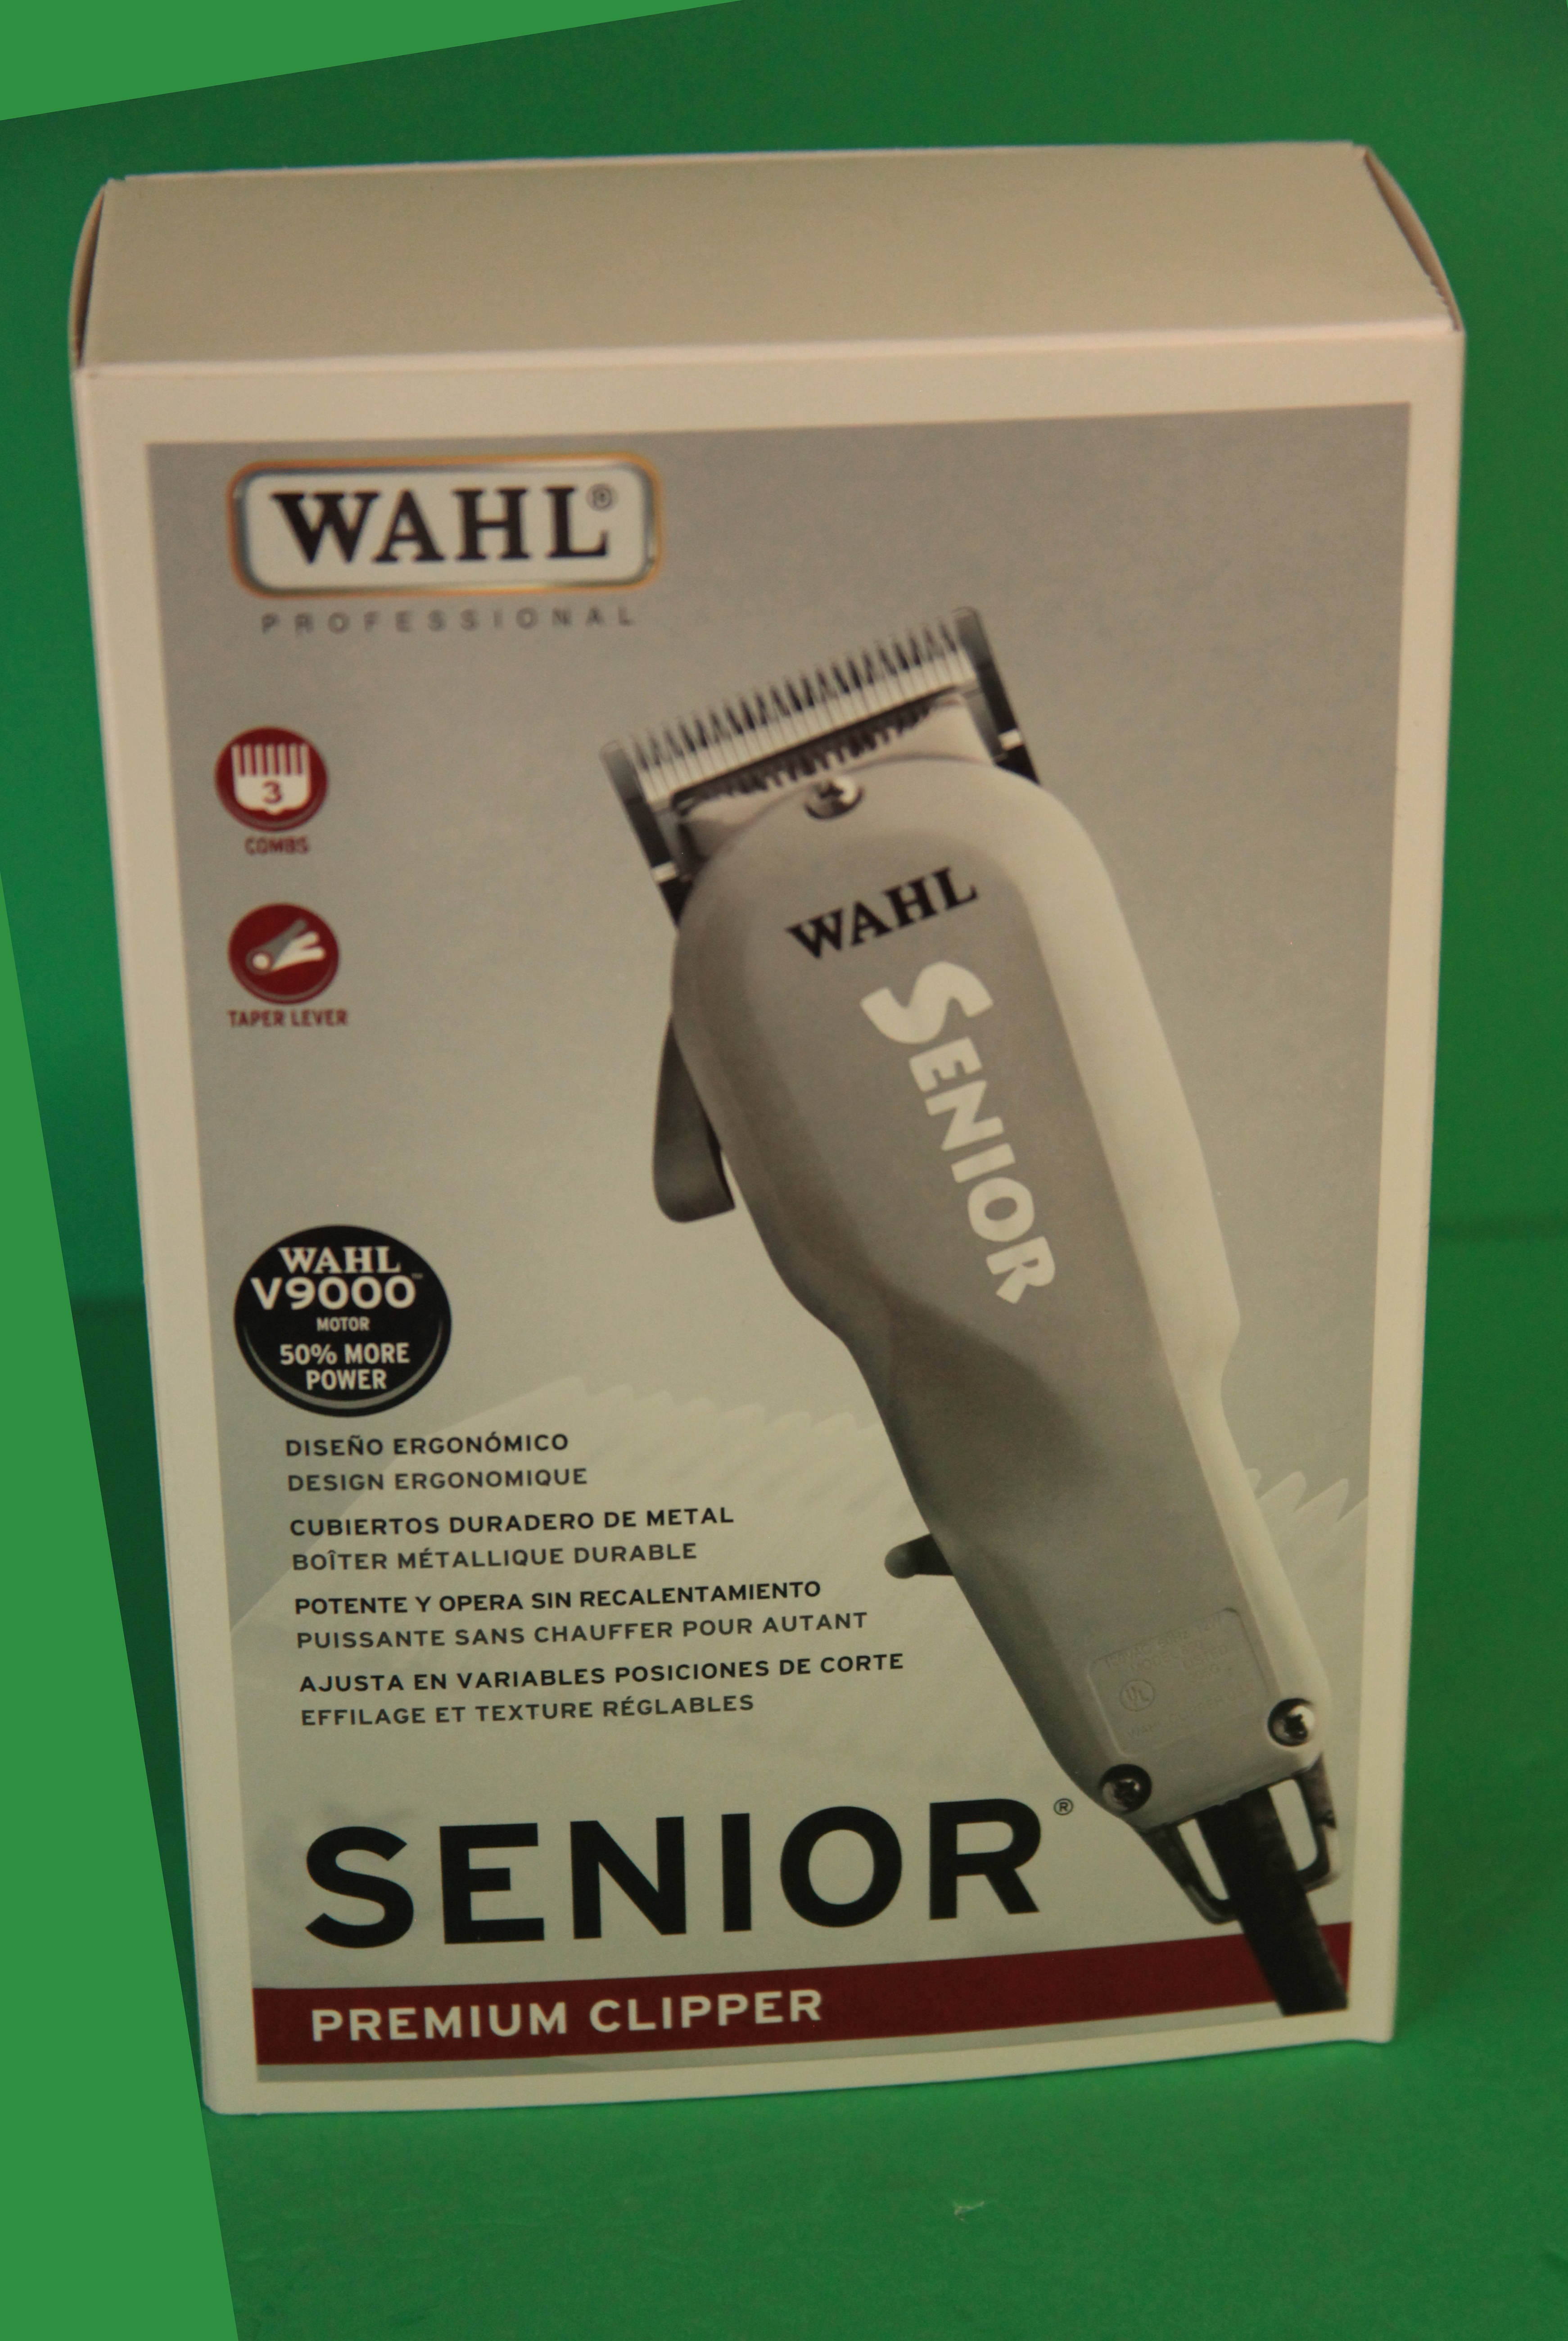 wahl professional 8500 senior premium clipper